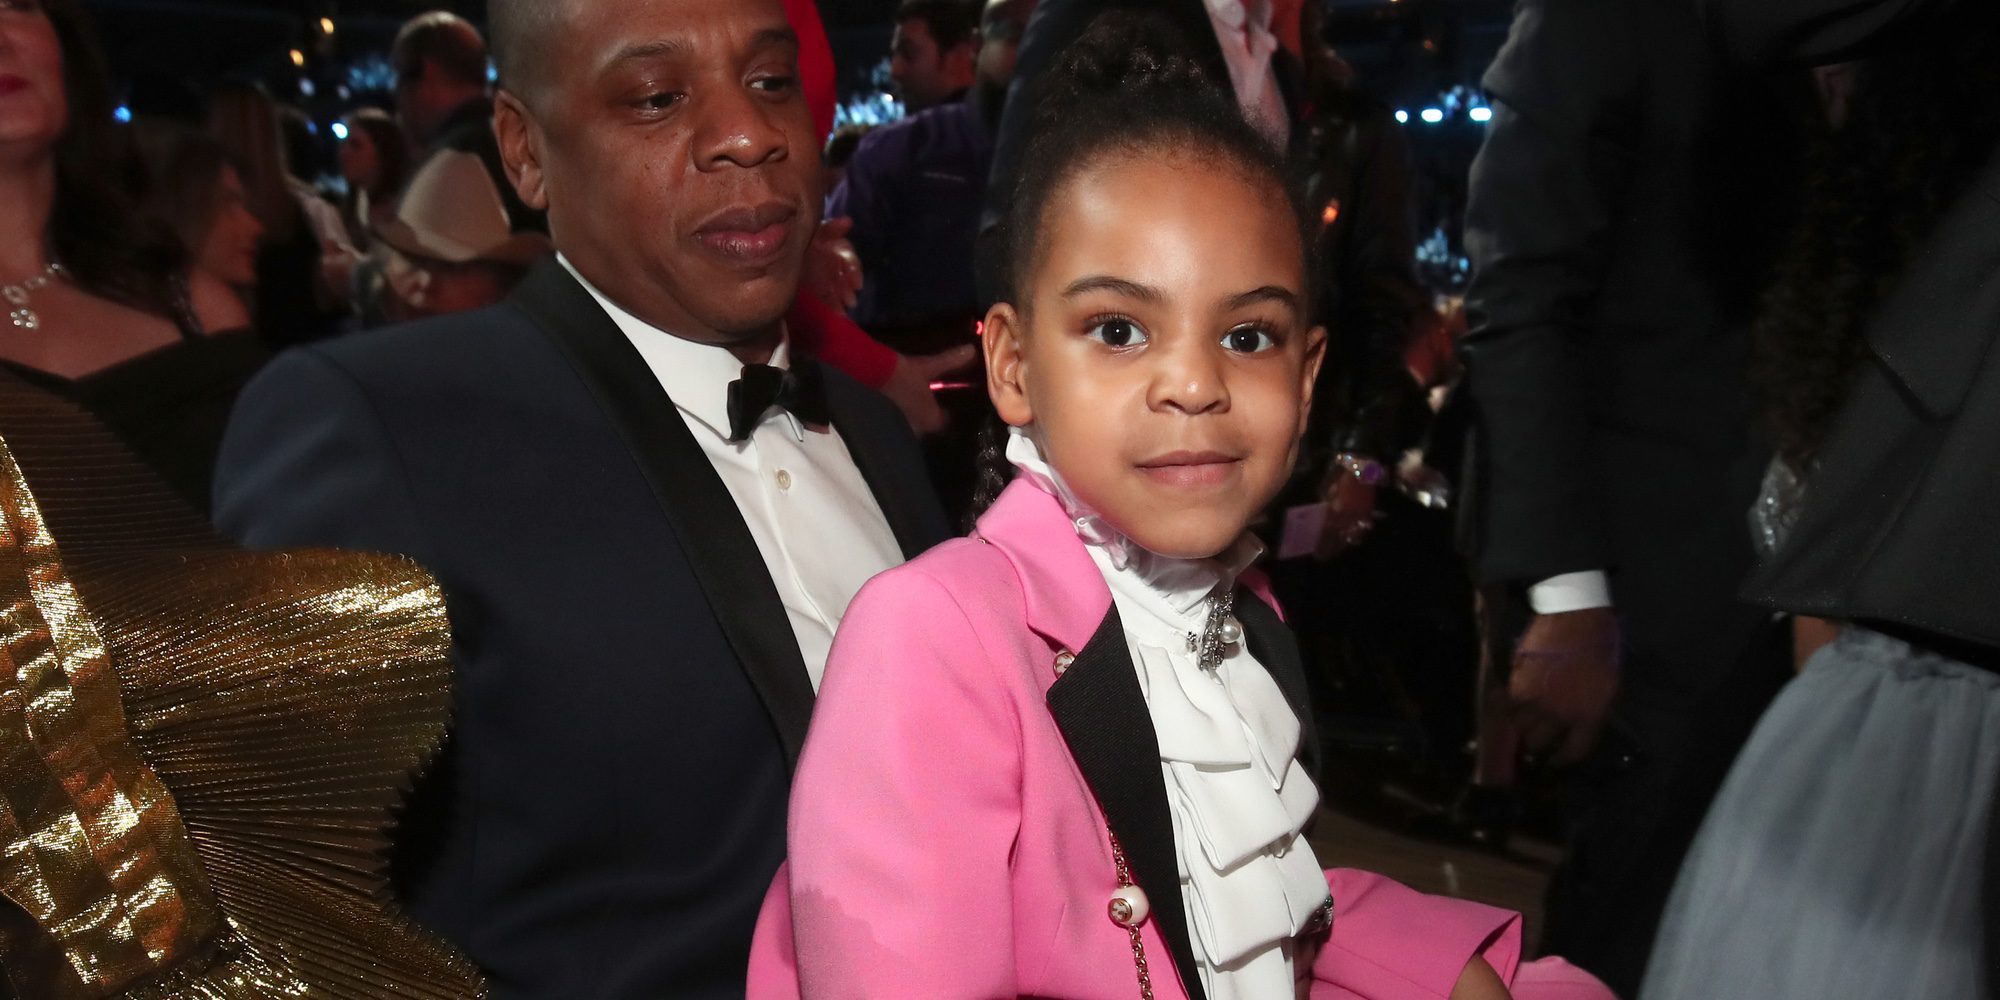 Blue Ivy roba el protagonismo a Beyoncé en la noche de los Premios Grammy 2017 tras su madre Beyoncé